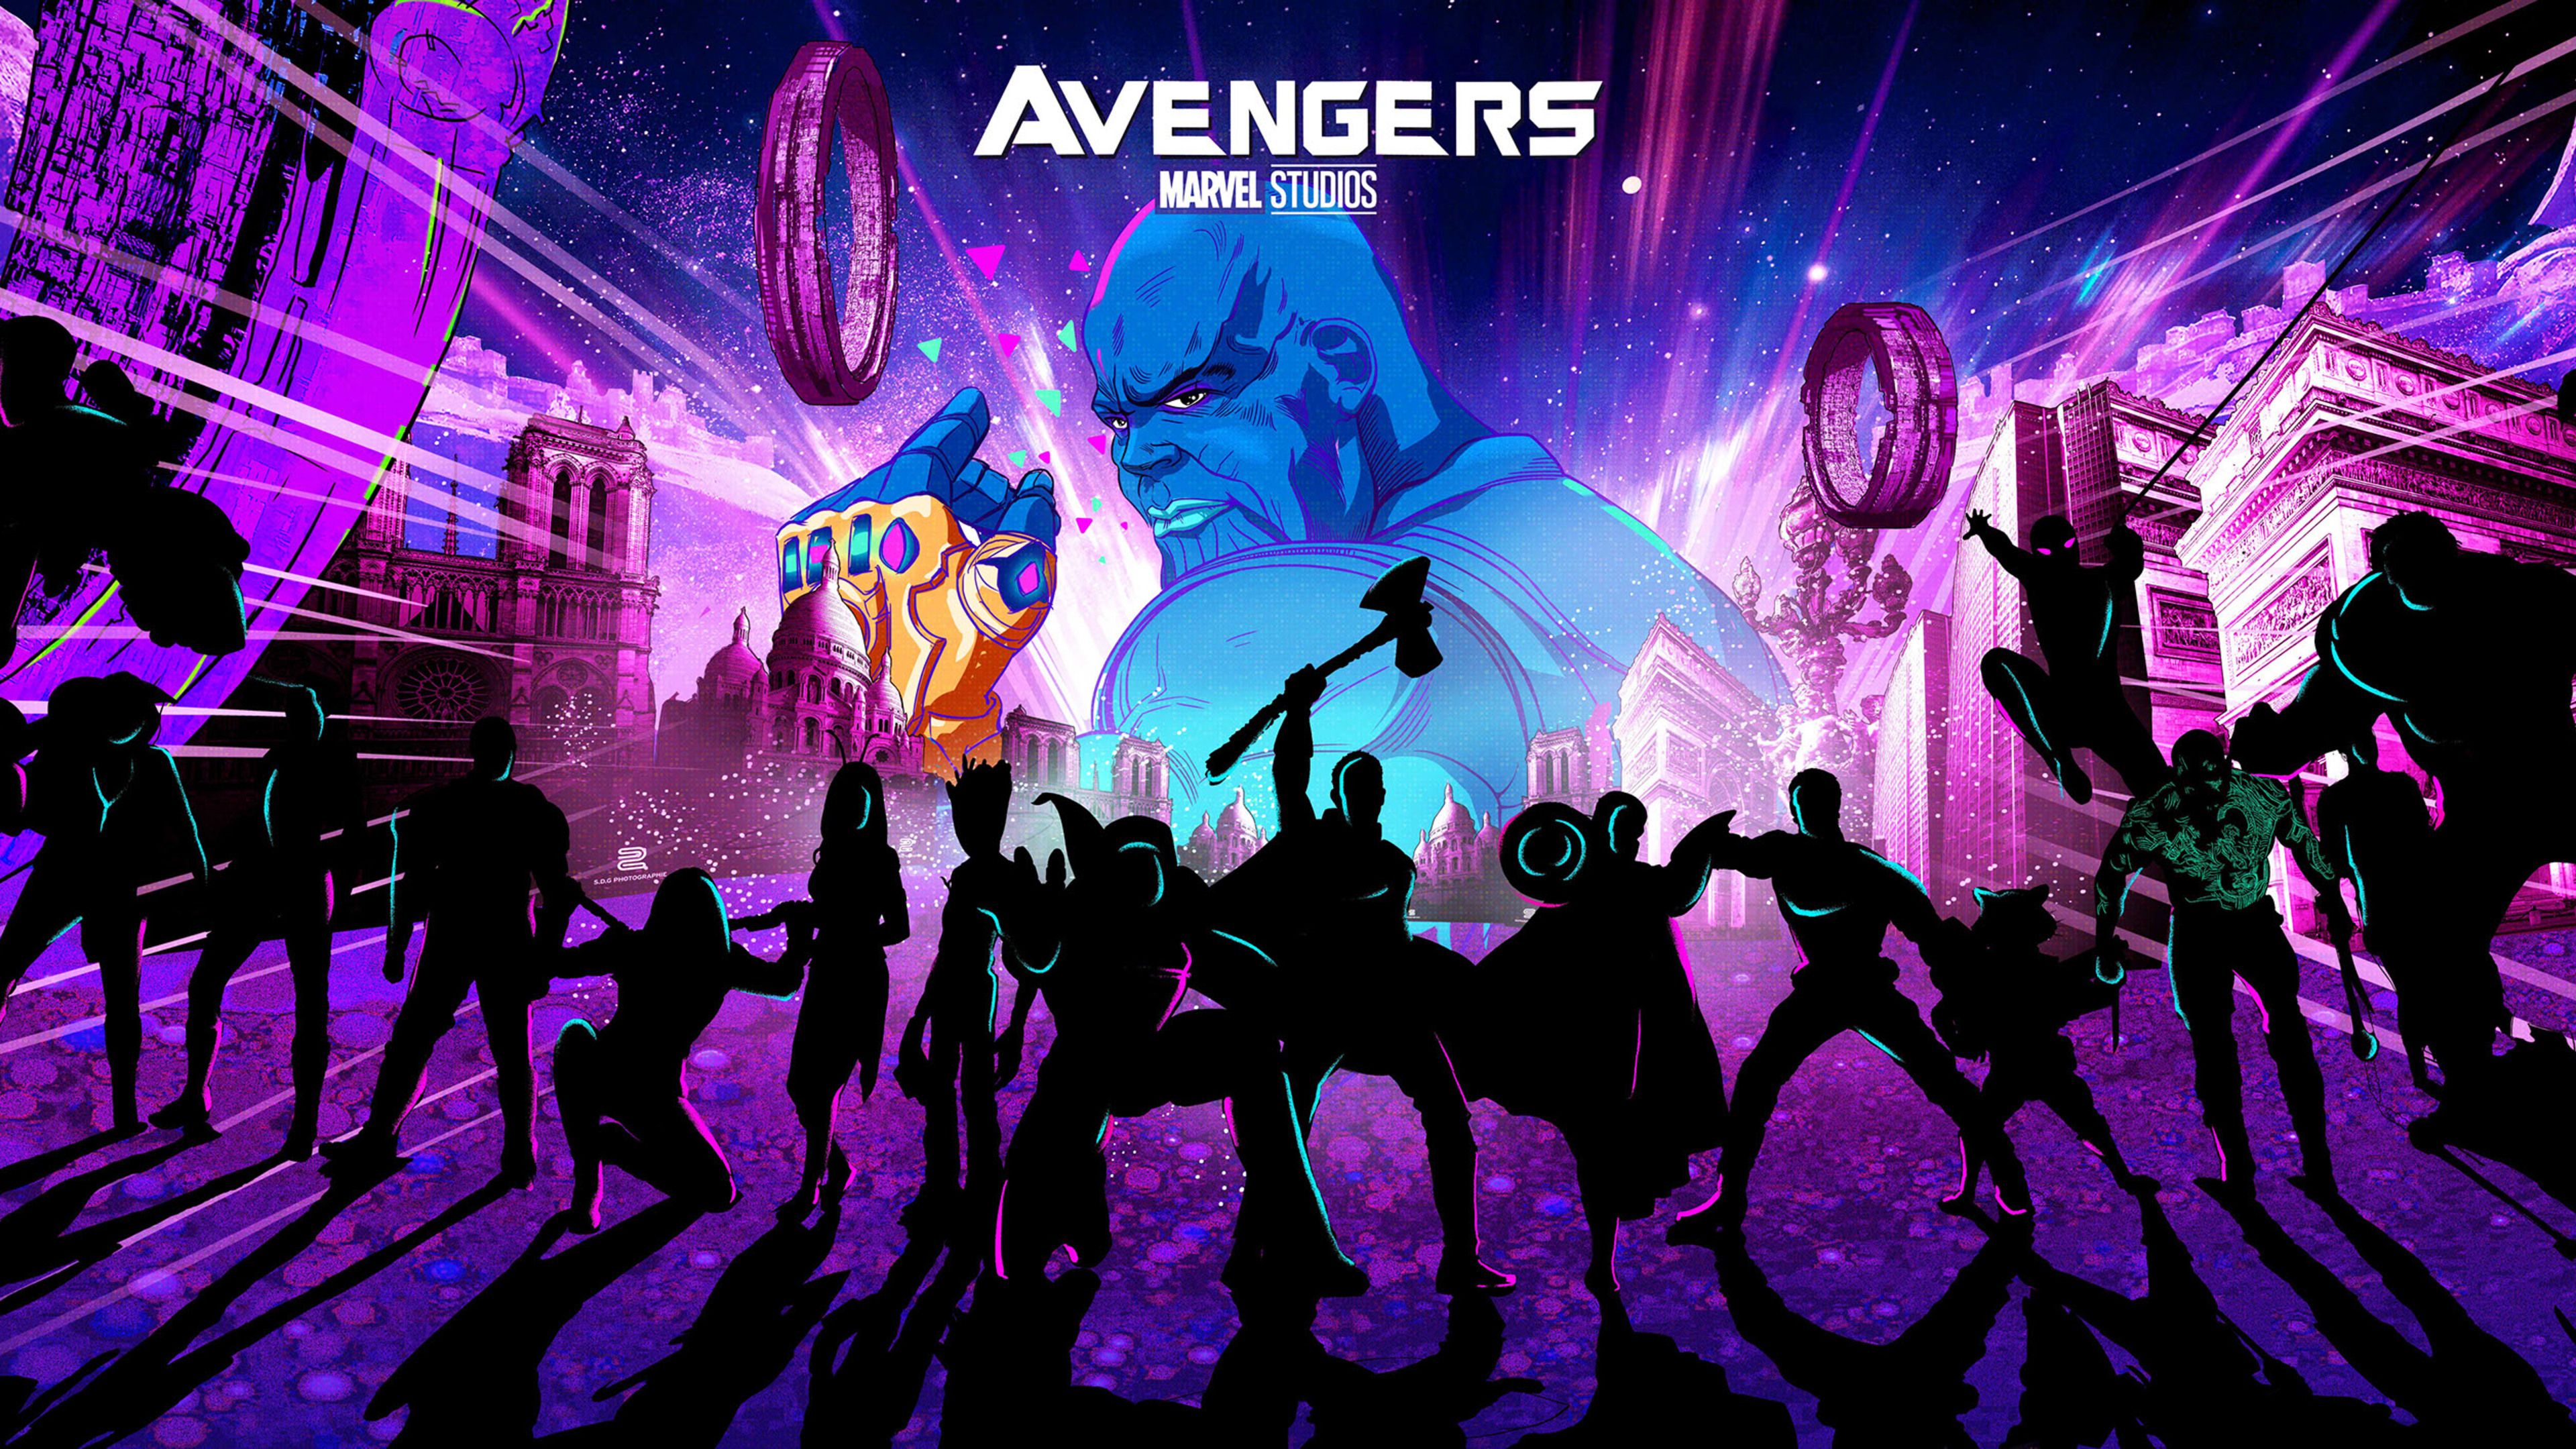 Avengers Endgame New Artwork 4k Endgame Wallpaper Art